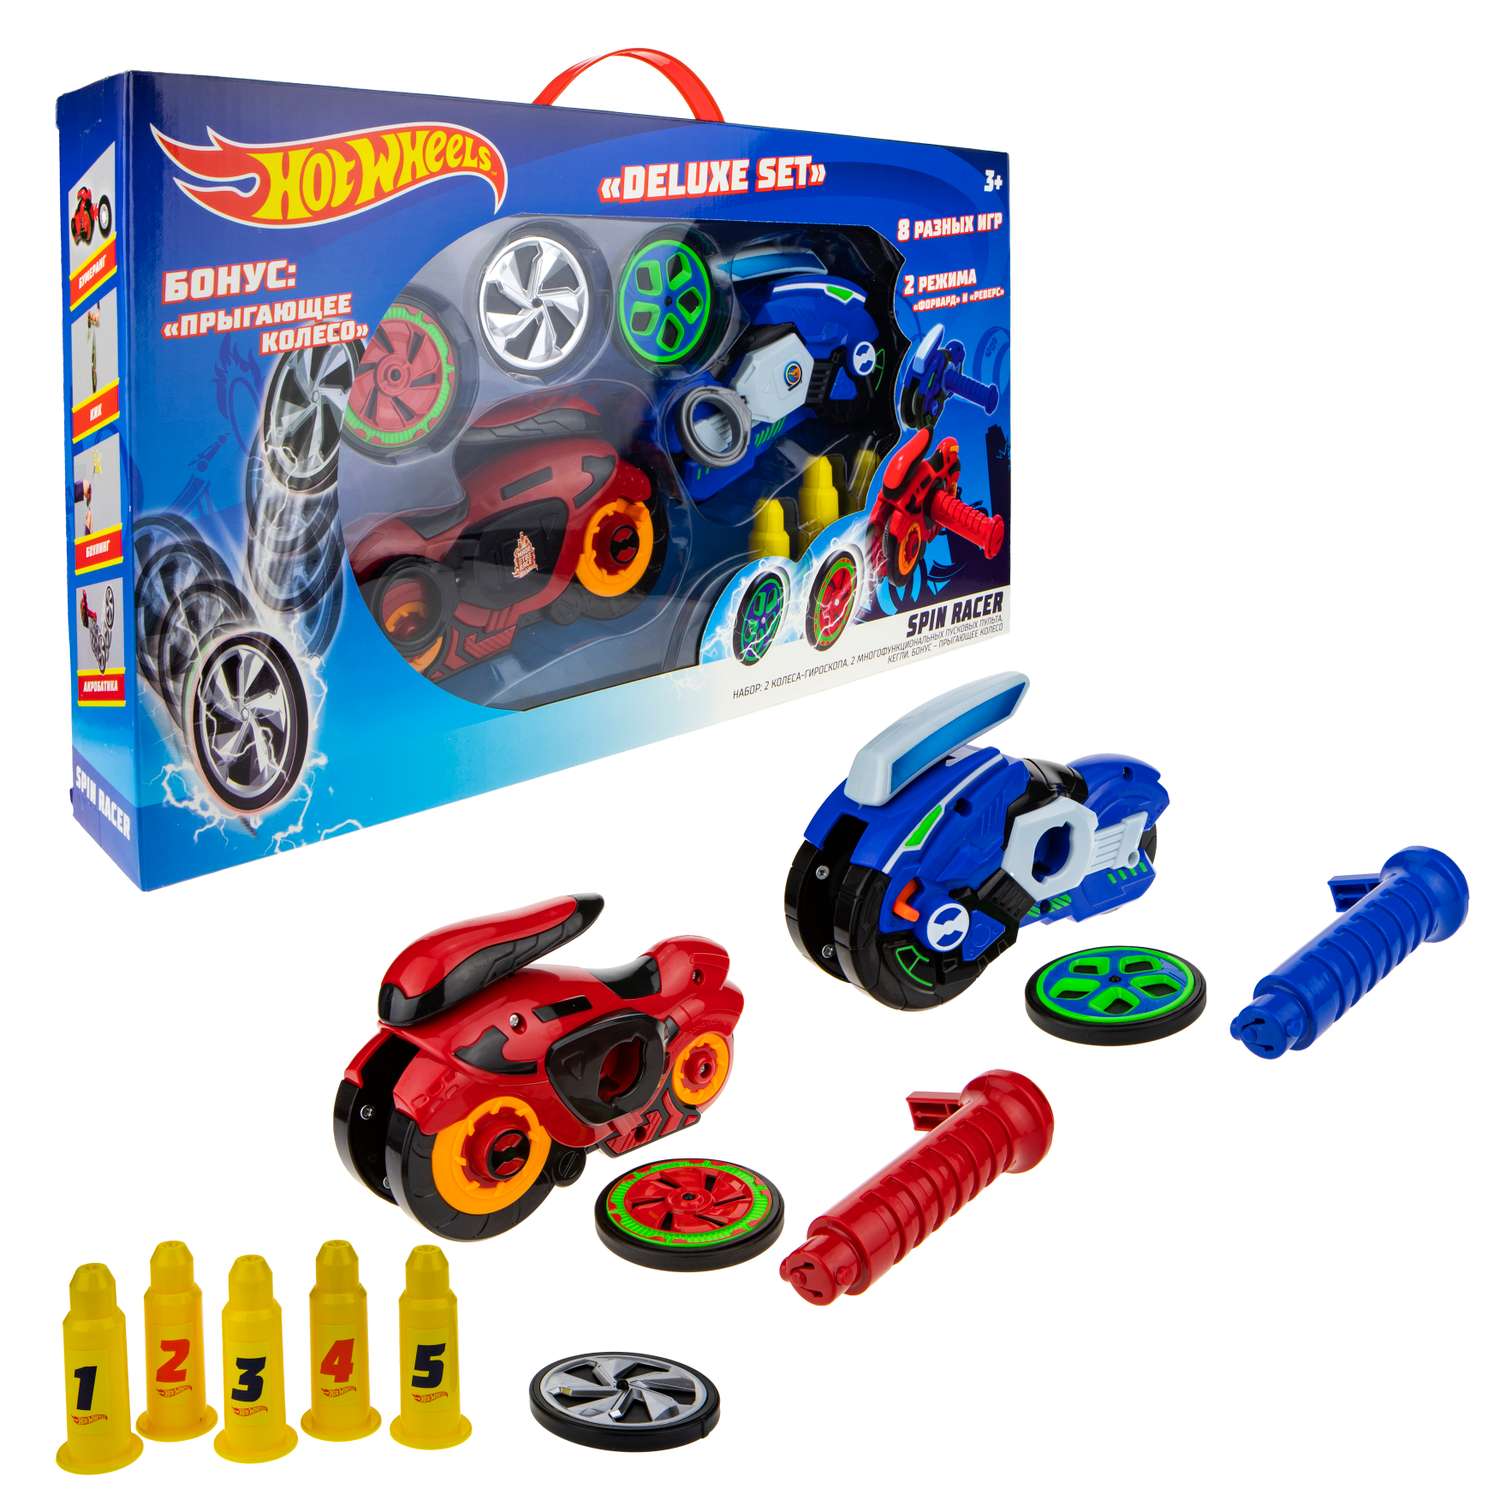 Игровой набор Hot Wheels Spin Racer Deluxe Set 2 игрушечных мотоцикла с колесами-гироскопами Т19375 - фото 14